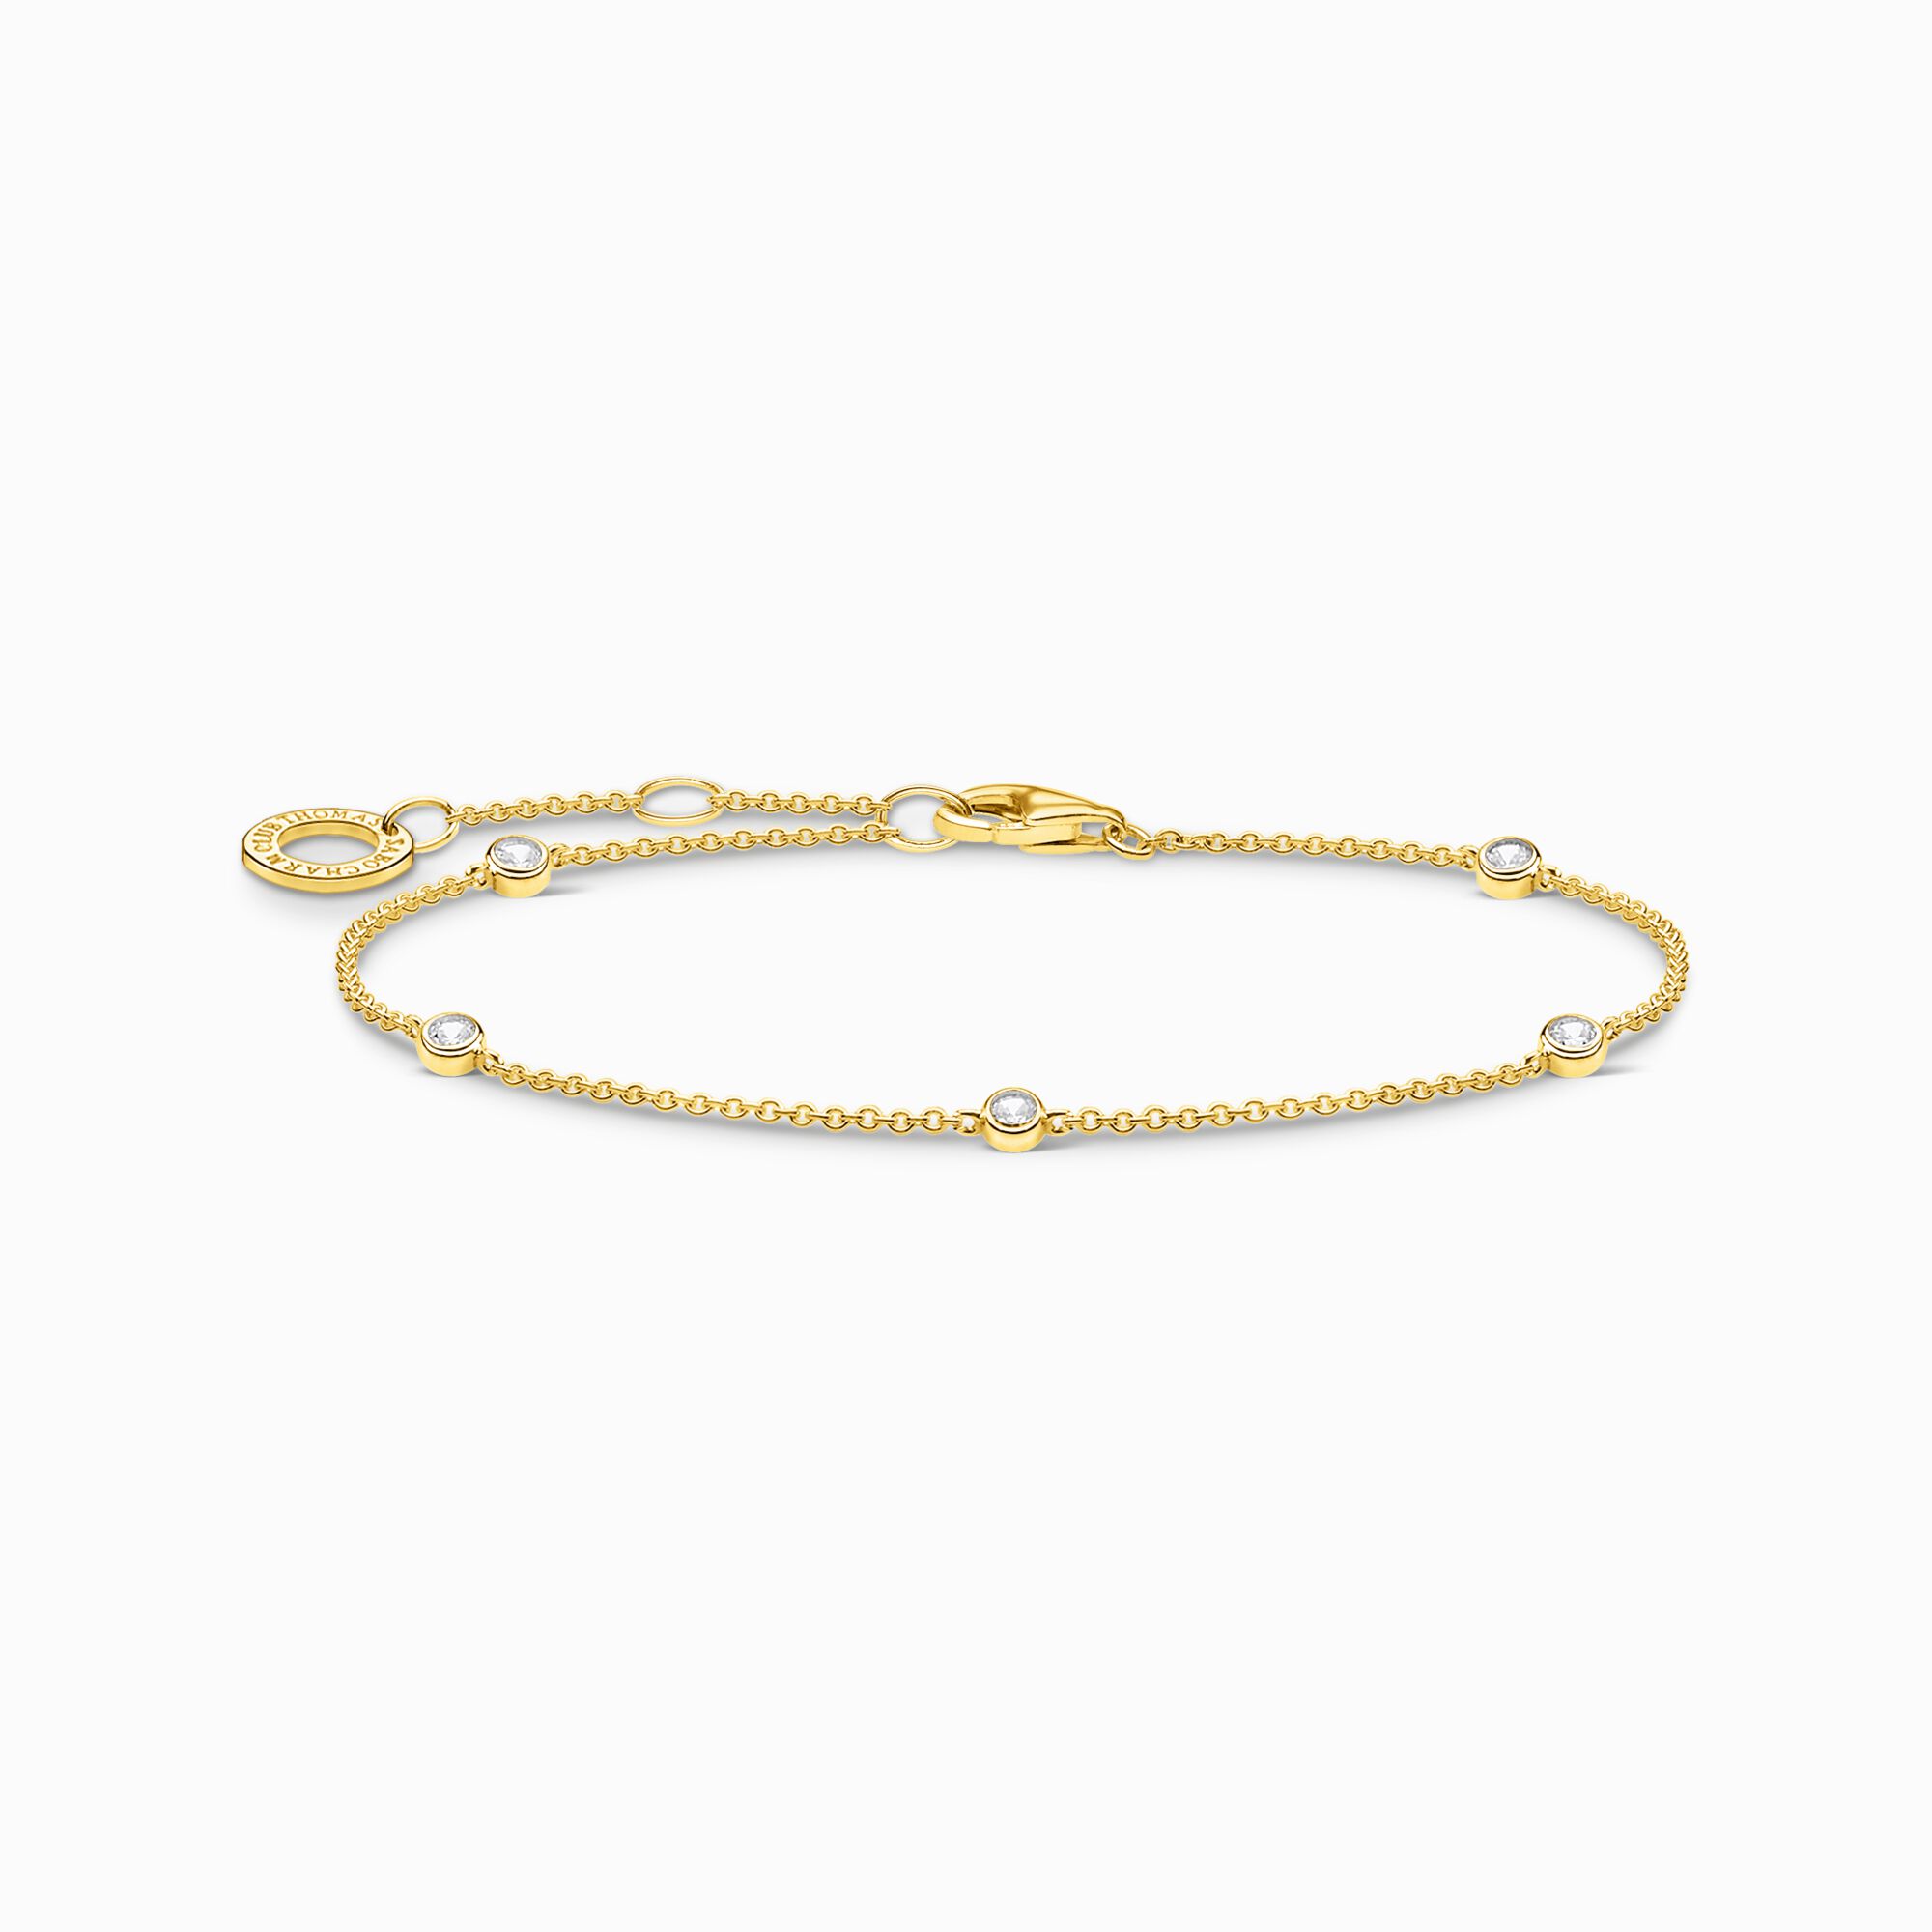 Thomas Sabo + Gold Bracelet With White Stones